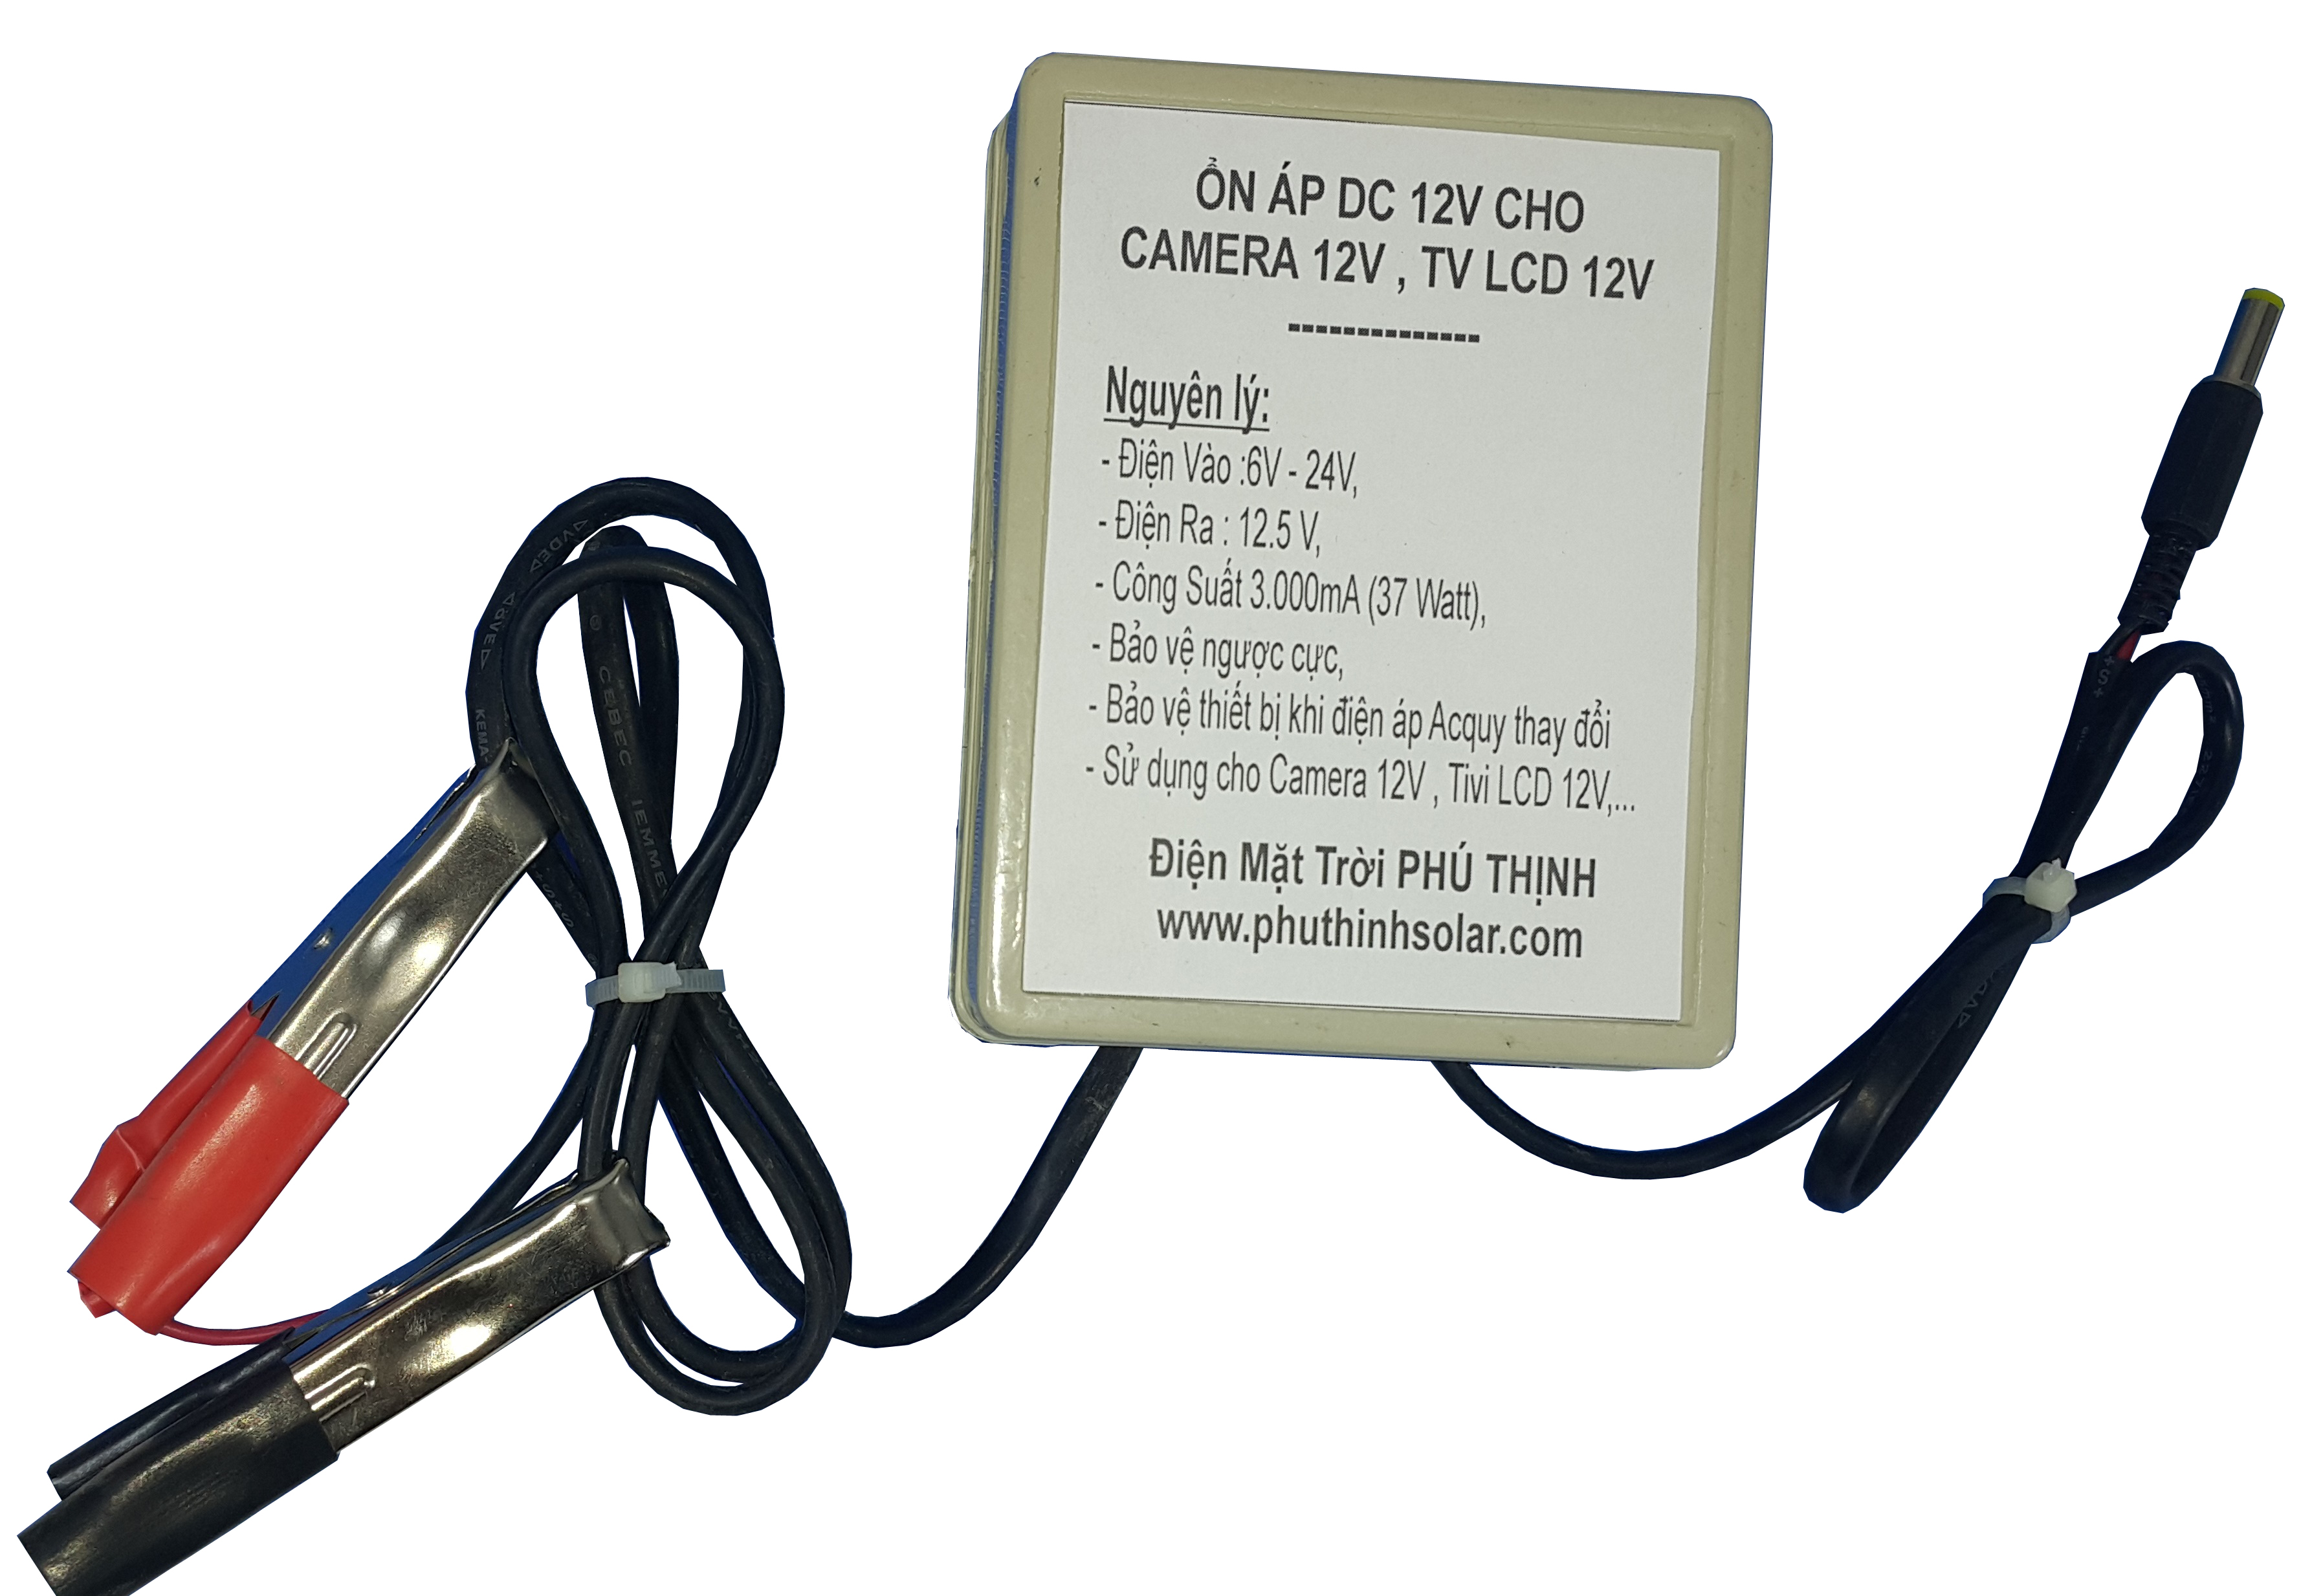 Ổn Áp DC 12V Cho Camera 12V và TV LCD 12V